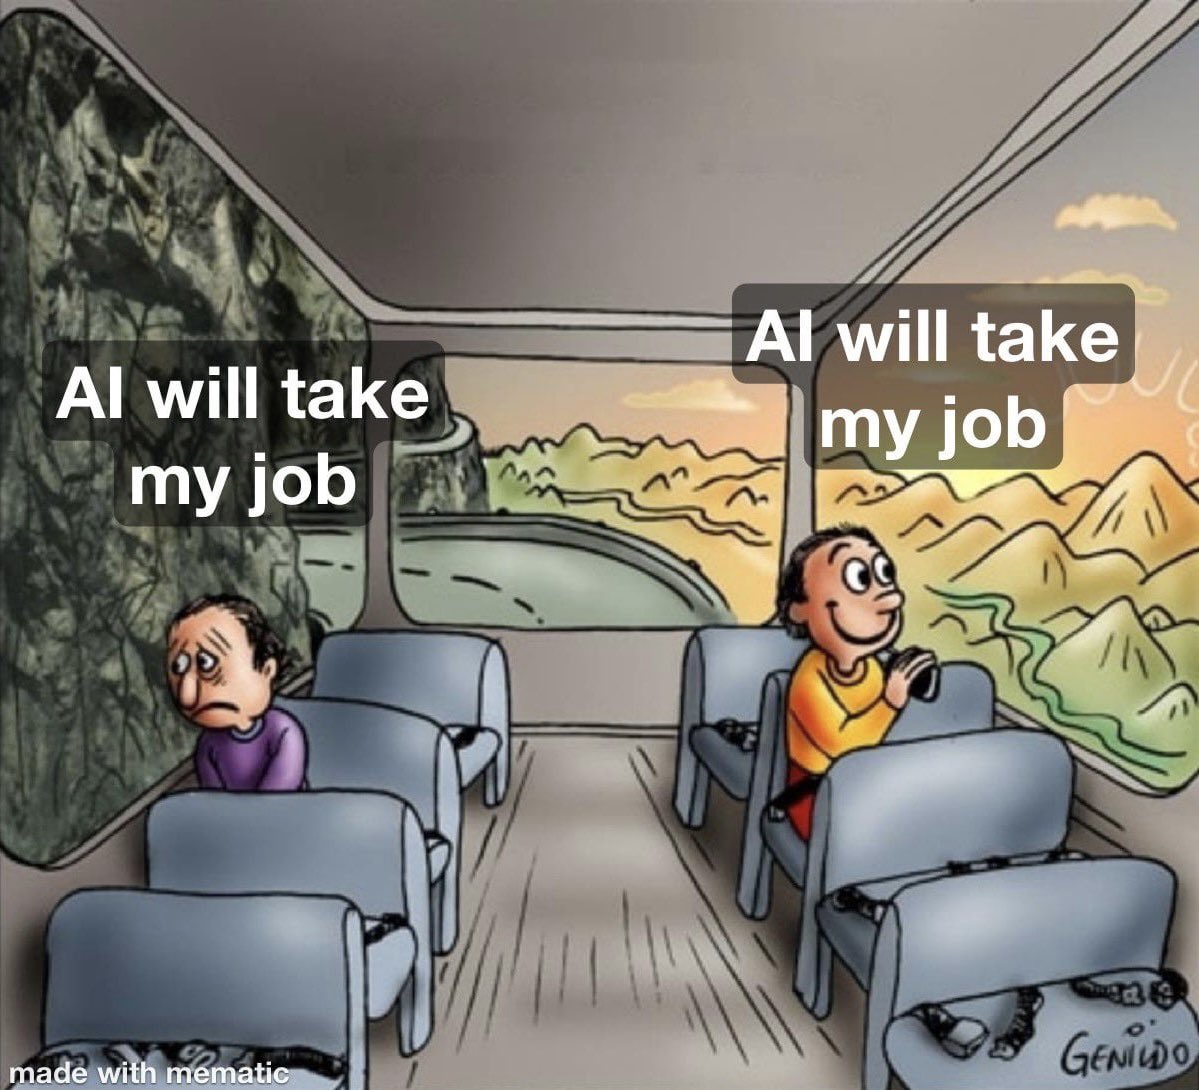 “AI will take my job”